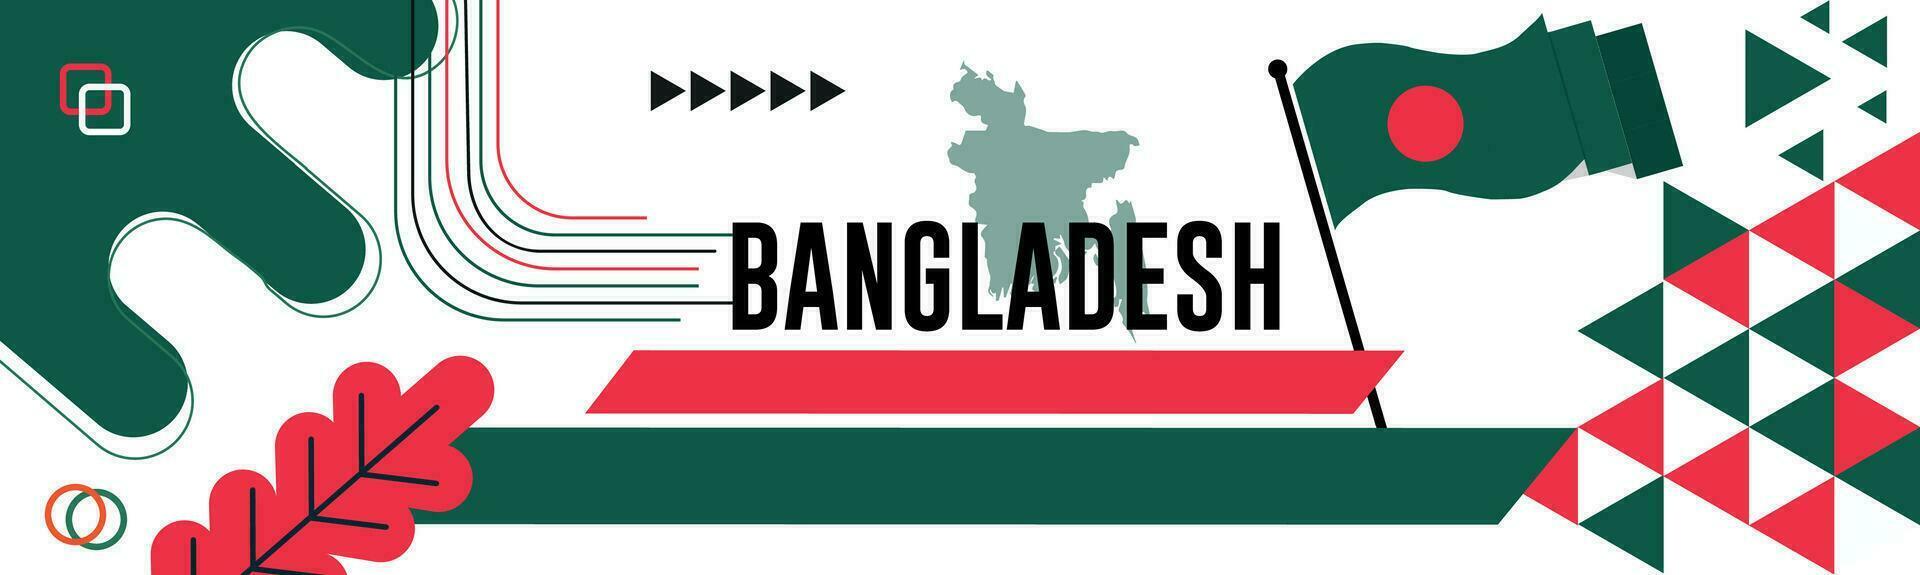 bangladesh nazionale giorno bandiera con carta geografica, bandiera colori tema sfondo e geometrico astratto retrò moderno colorfull design con sollevato mani o pugni. vettore